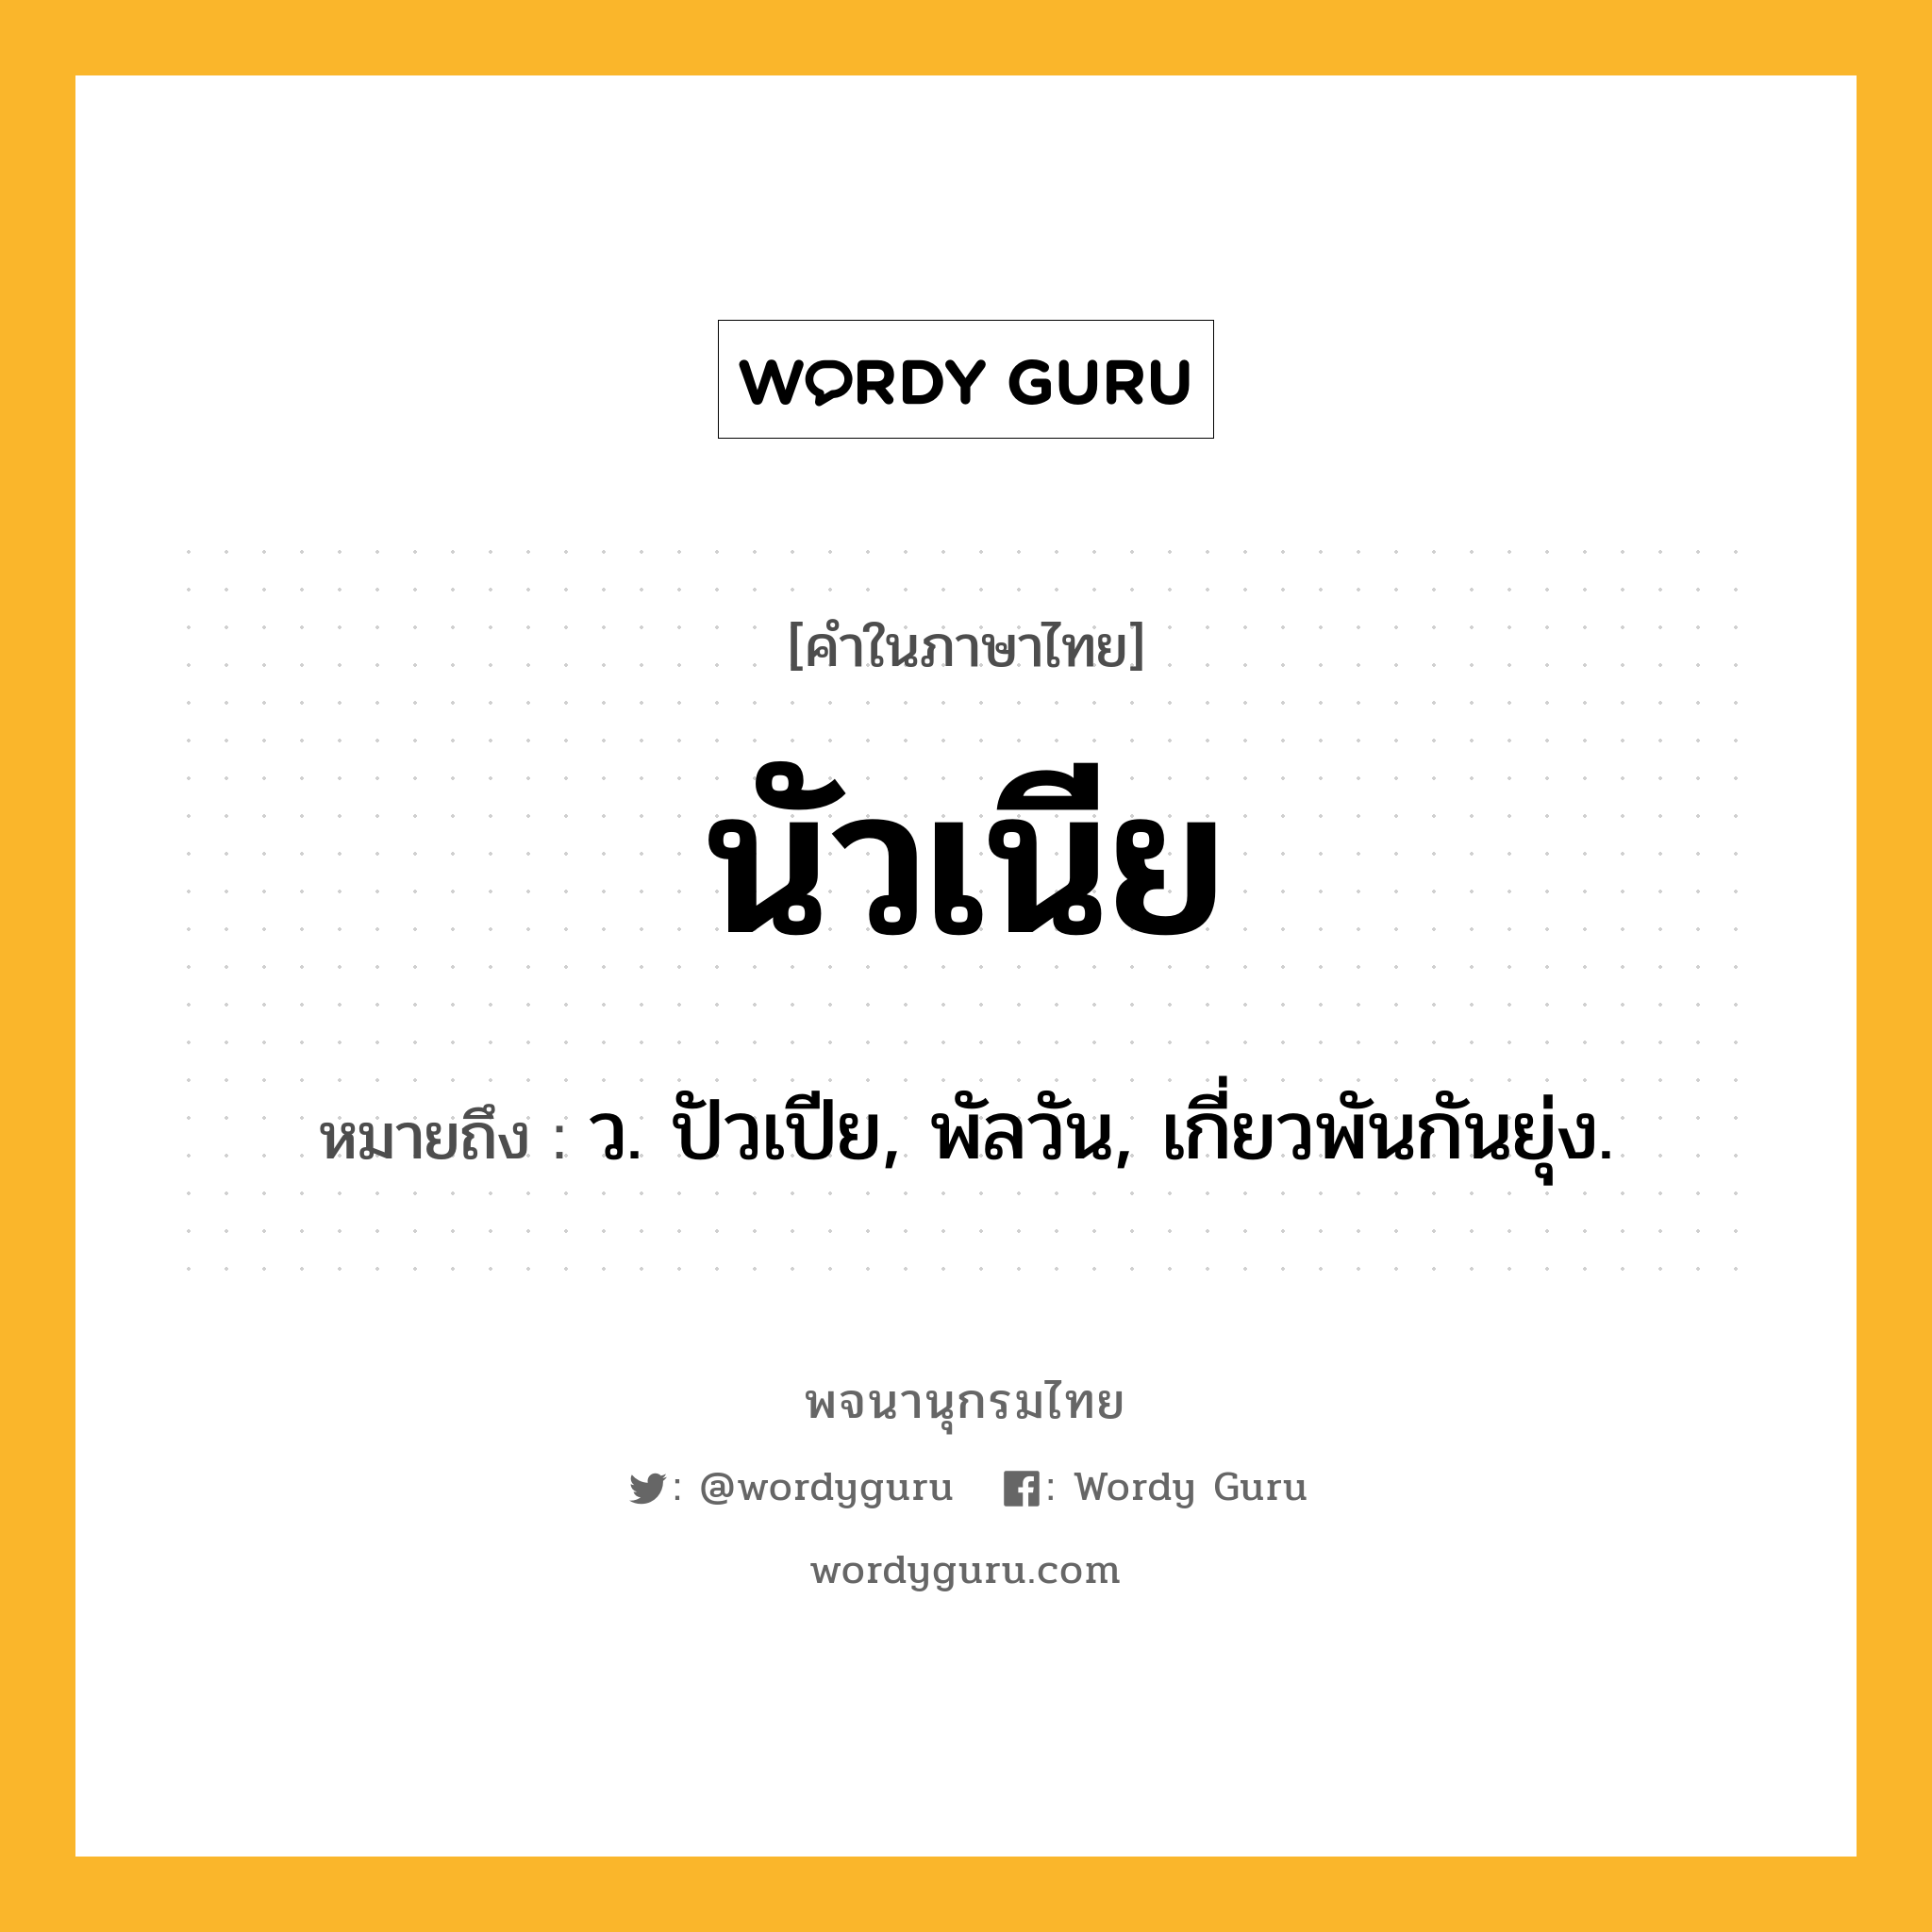 นัวเนีย หมายถึงอะไร?, คำในภาษาไทย นัวเนีย หมายถึง ว. ปัวเปีย, พัลวัน, เกี่ยวพันกันยุ่ง.